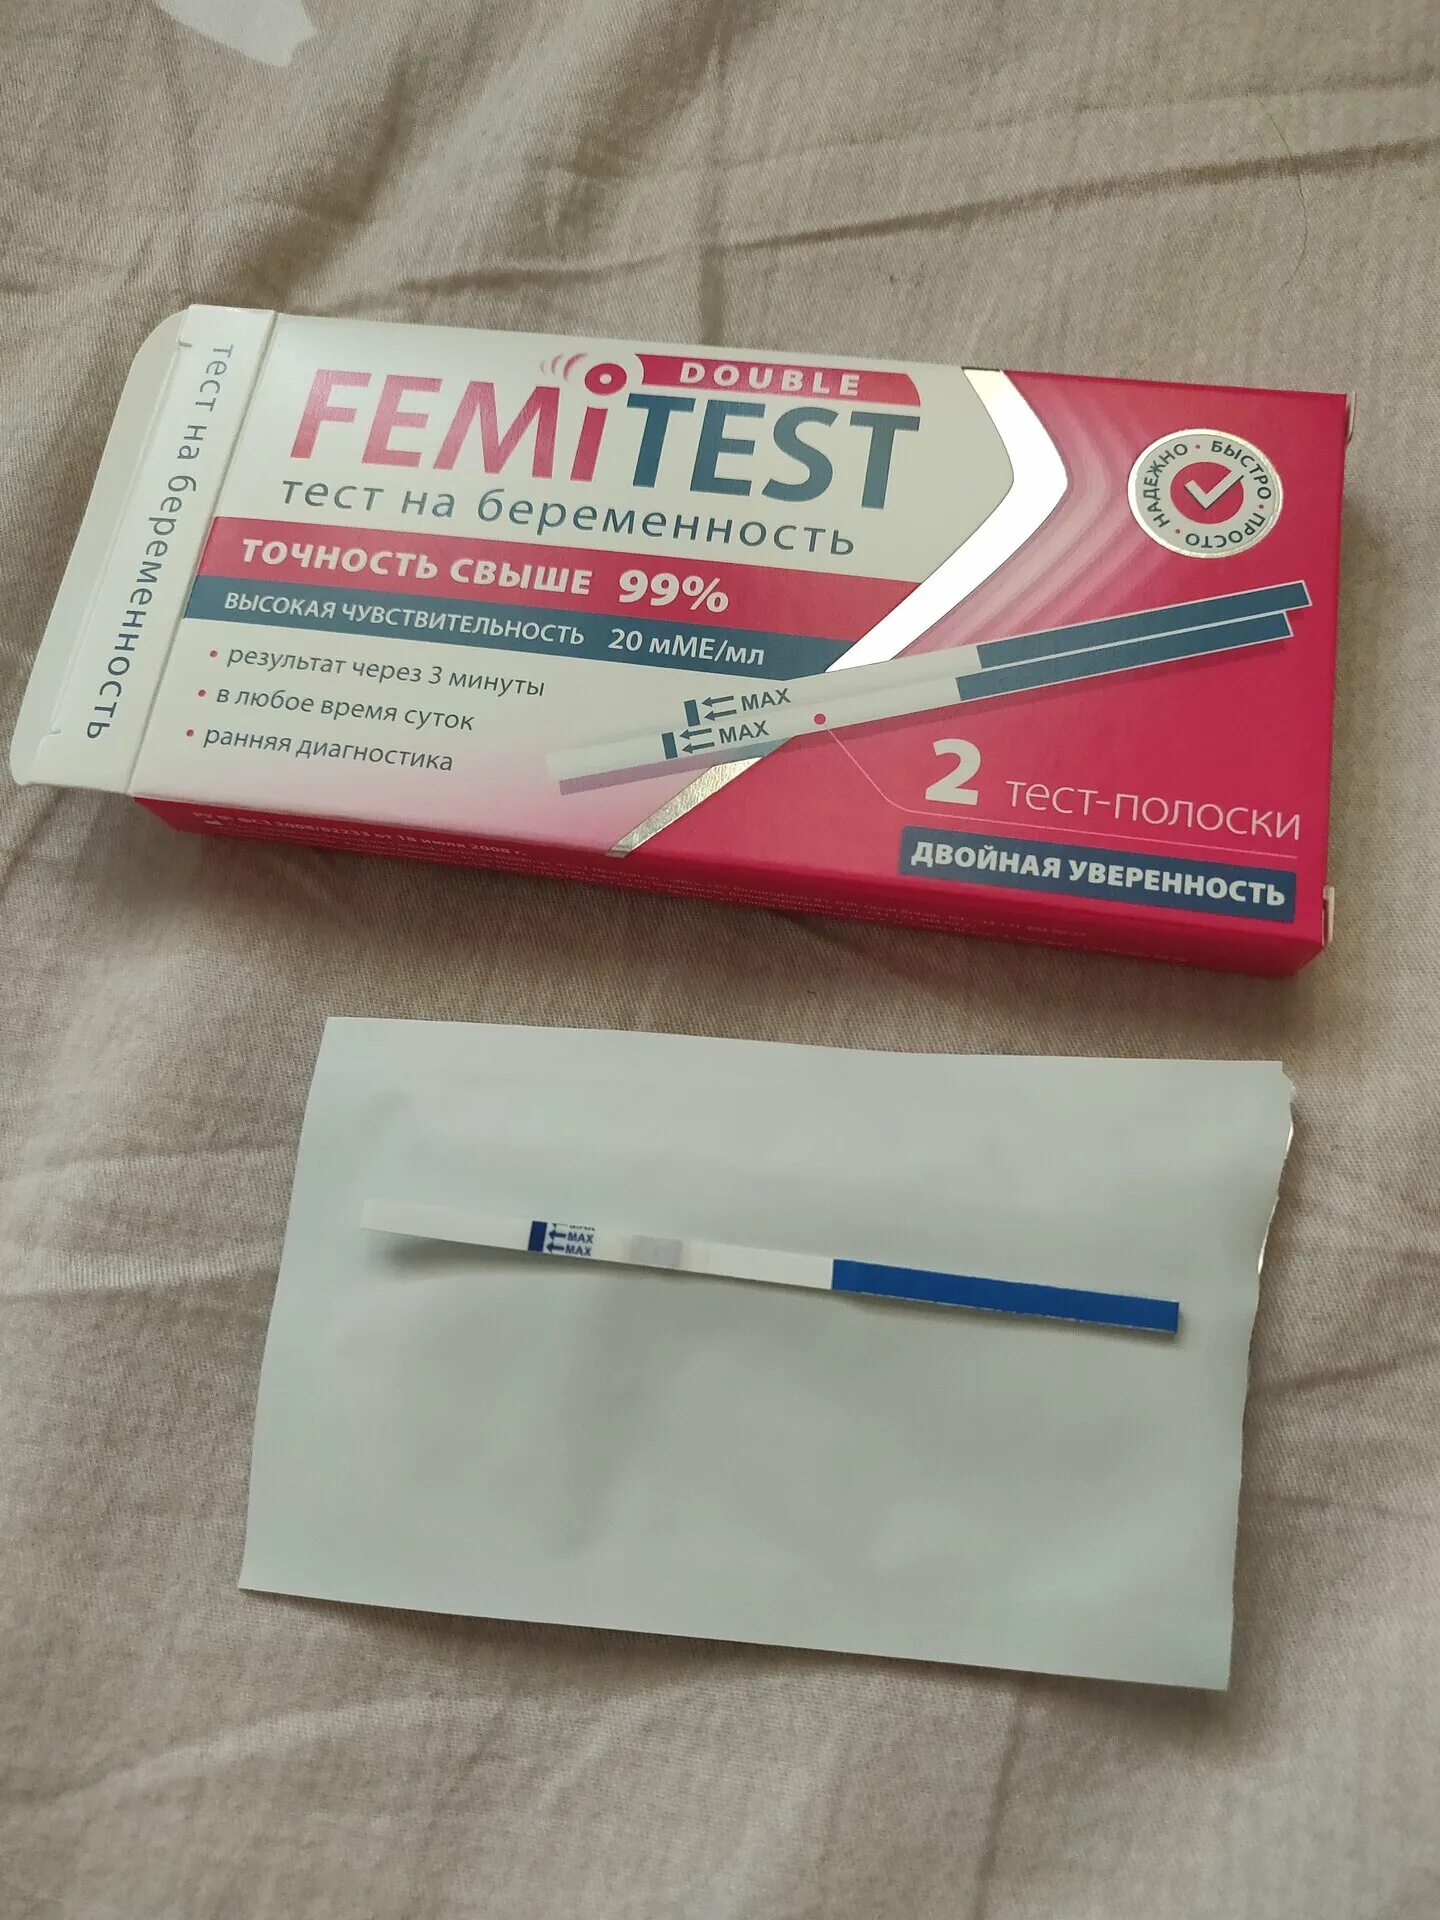 Феми тесты отзывы. Femitest Ultra 10 ММЕ/мл тест полоска. Струйный тест на беременность femitest. Femitest Ultra с чувствительностью 10 ММЕ/мл. Тест-полоски femitest Ultra с чувствительностью 10.